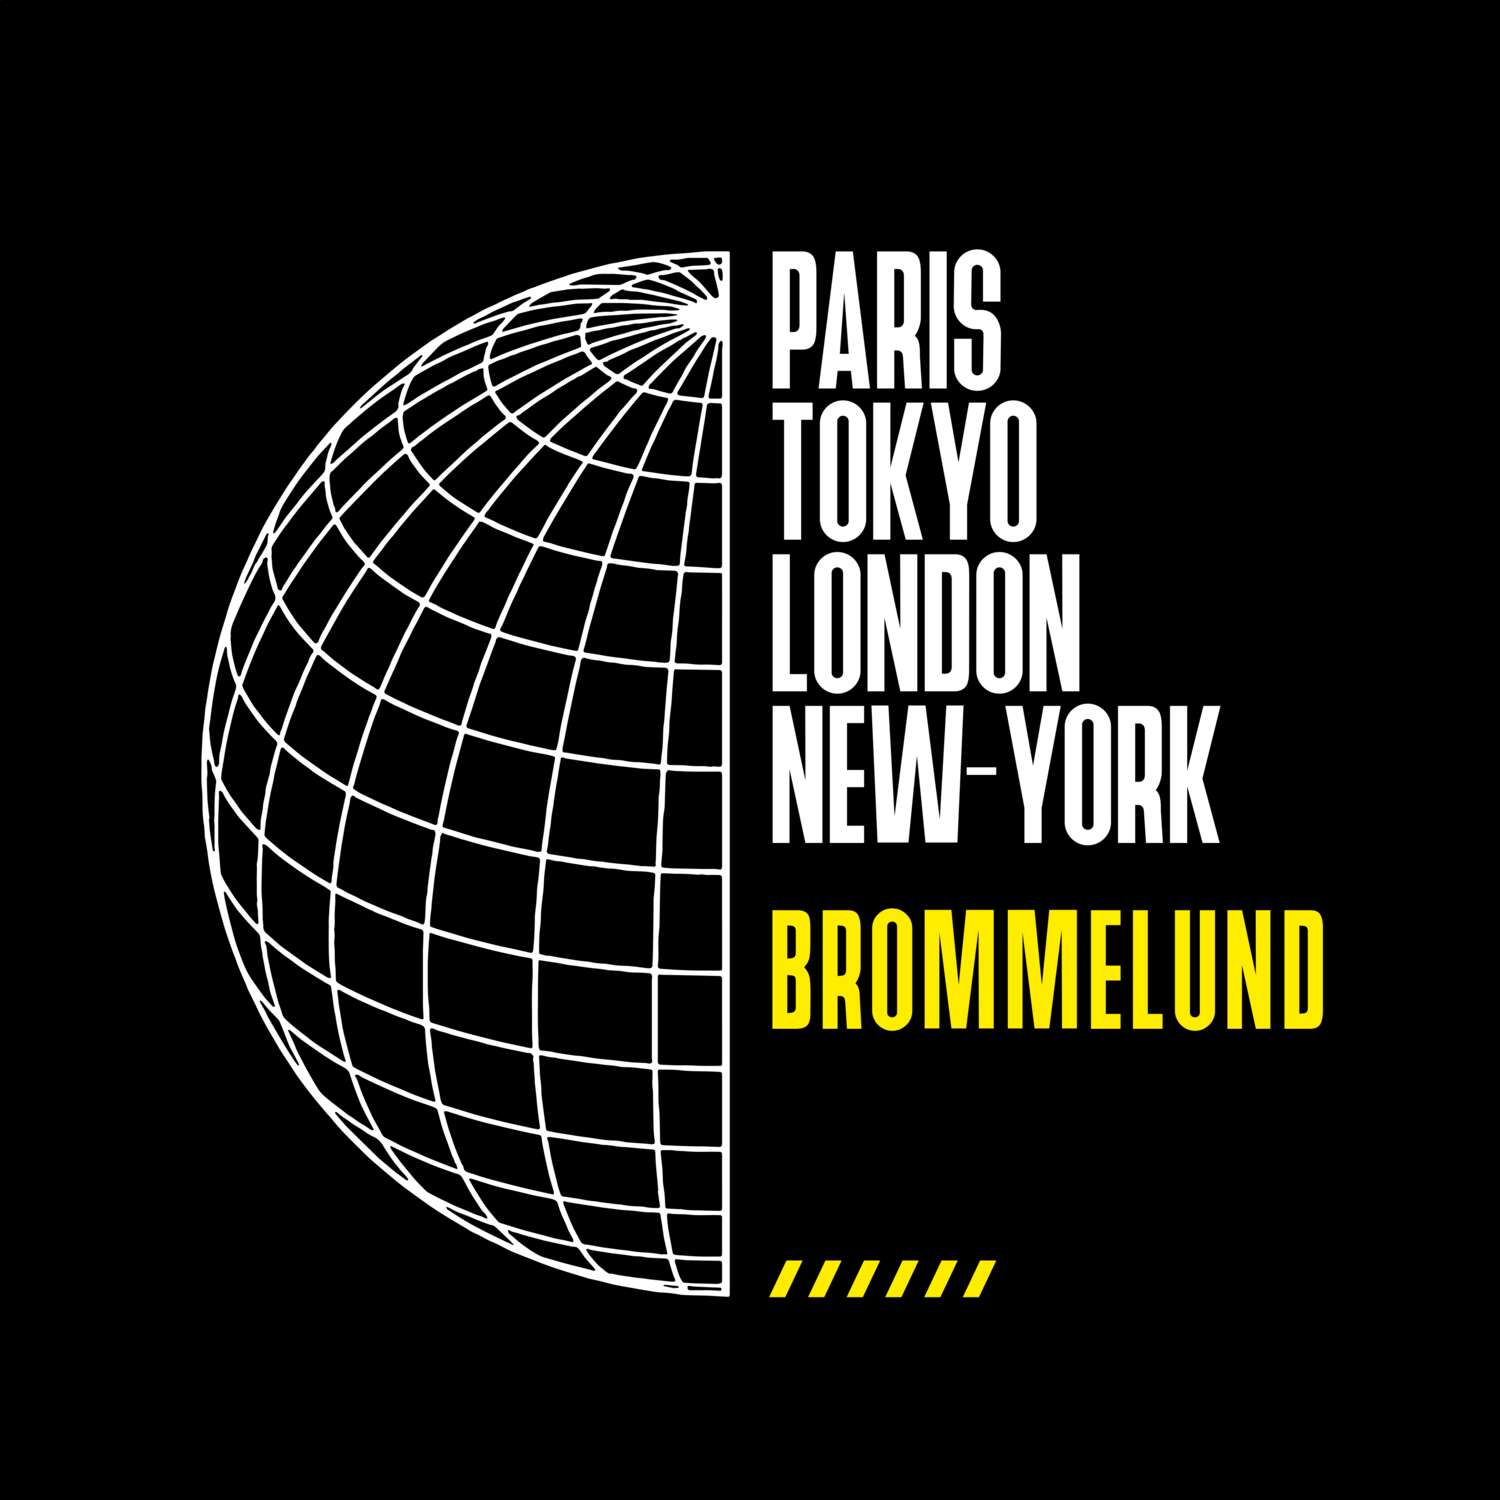 Brommelund T-Shirt »Paris Tokyo London«